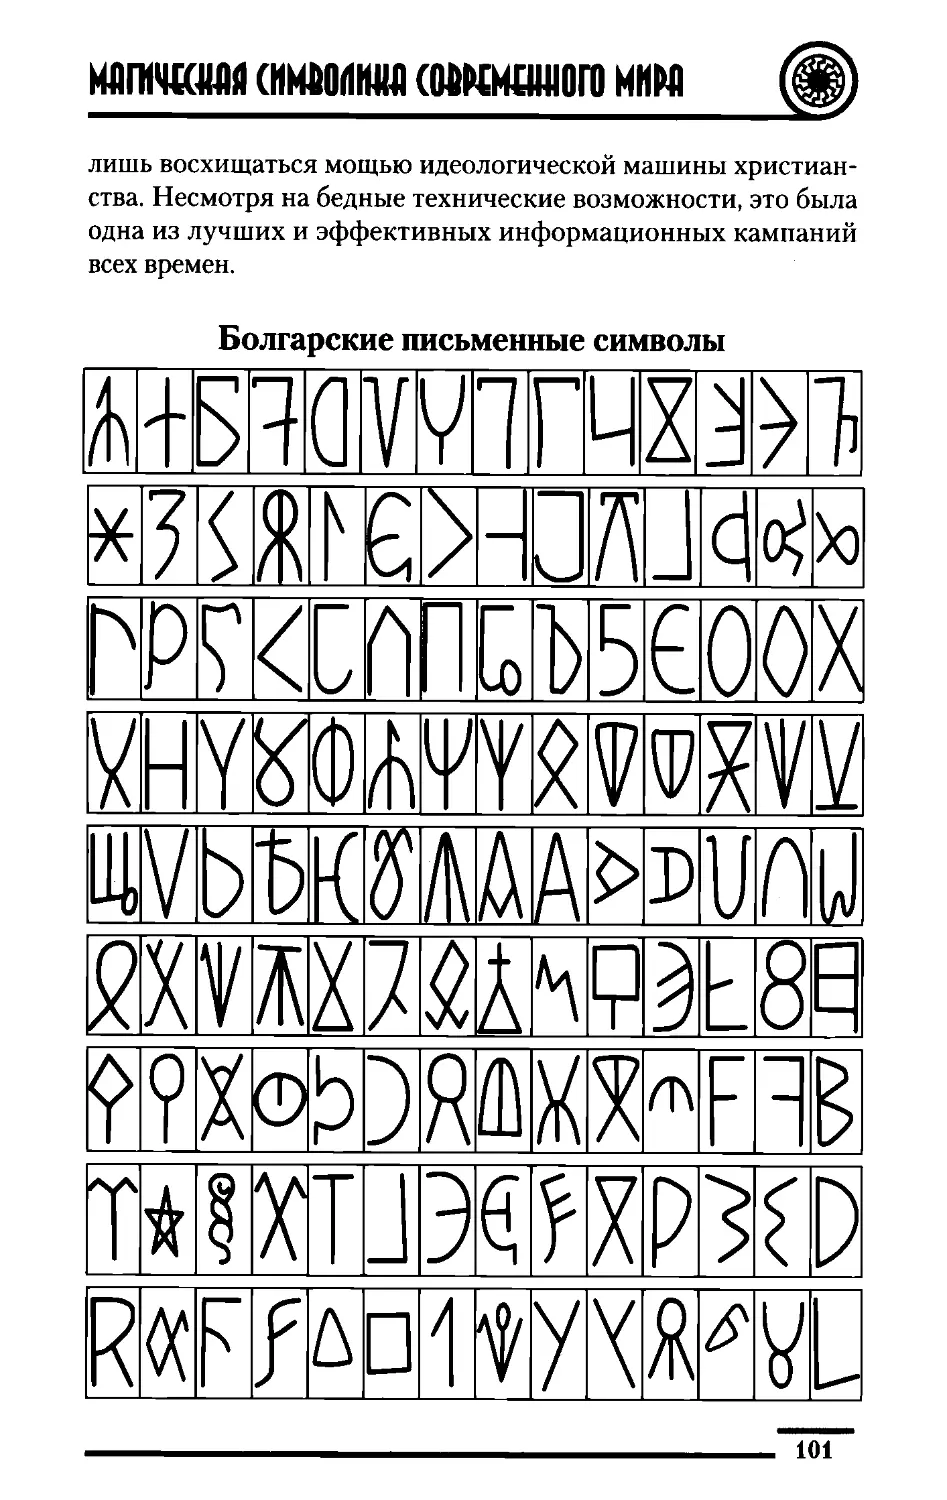 ﻿Болгарские письменные символ